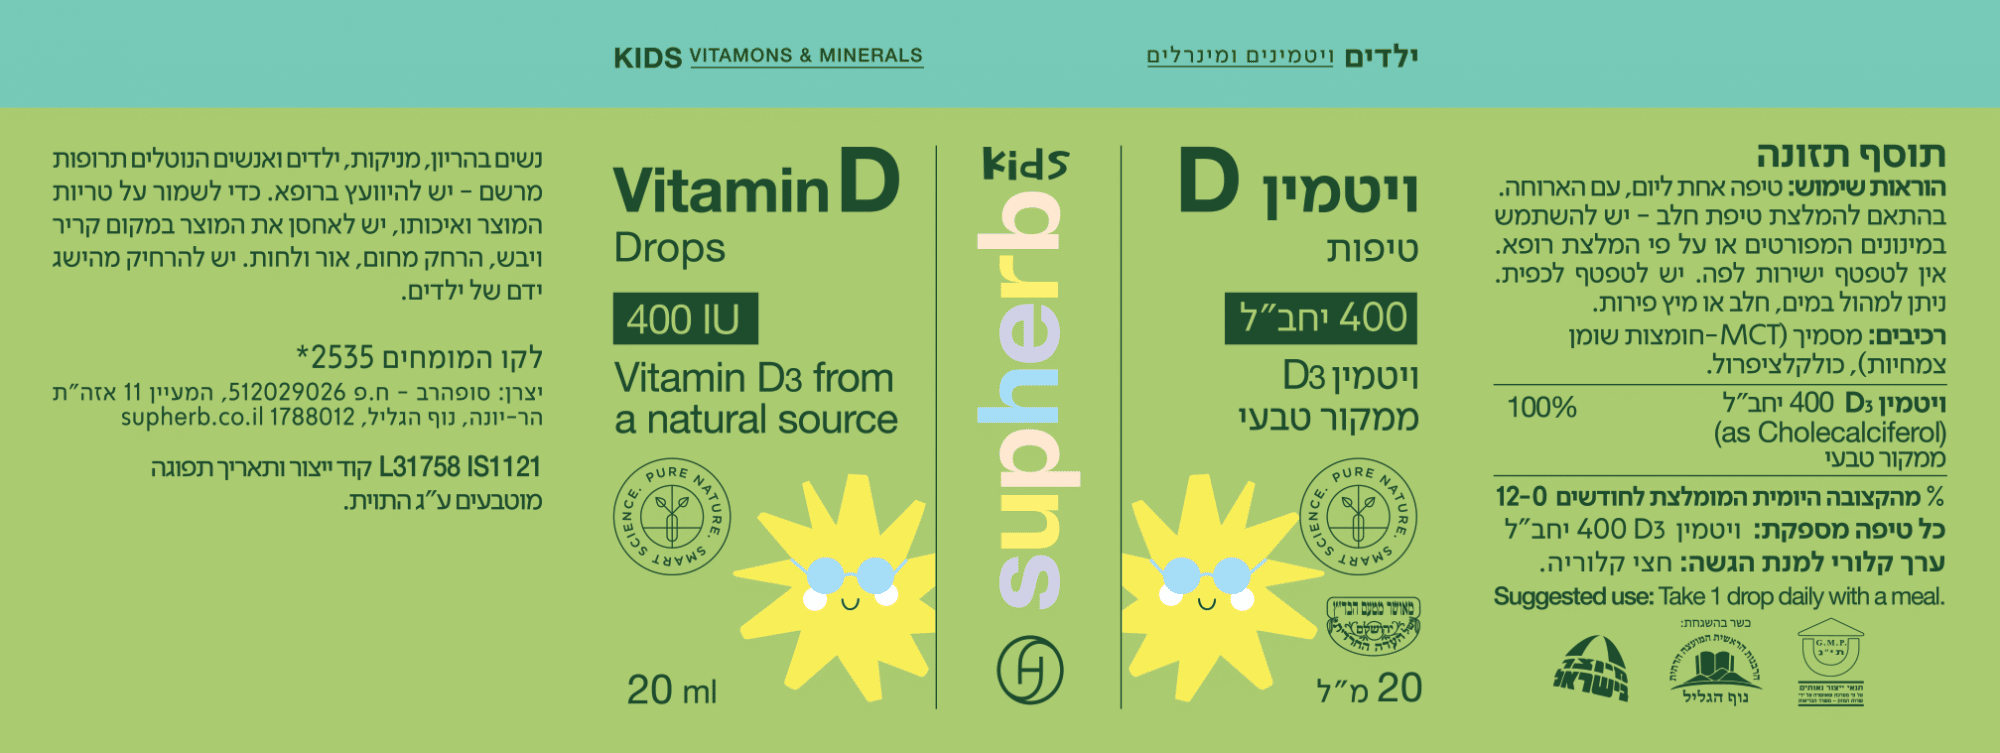 טיפות ויטמין D לילדים